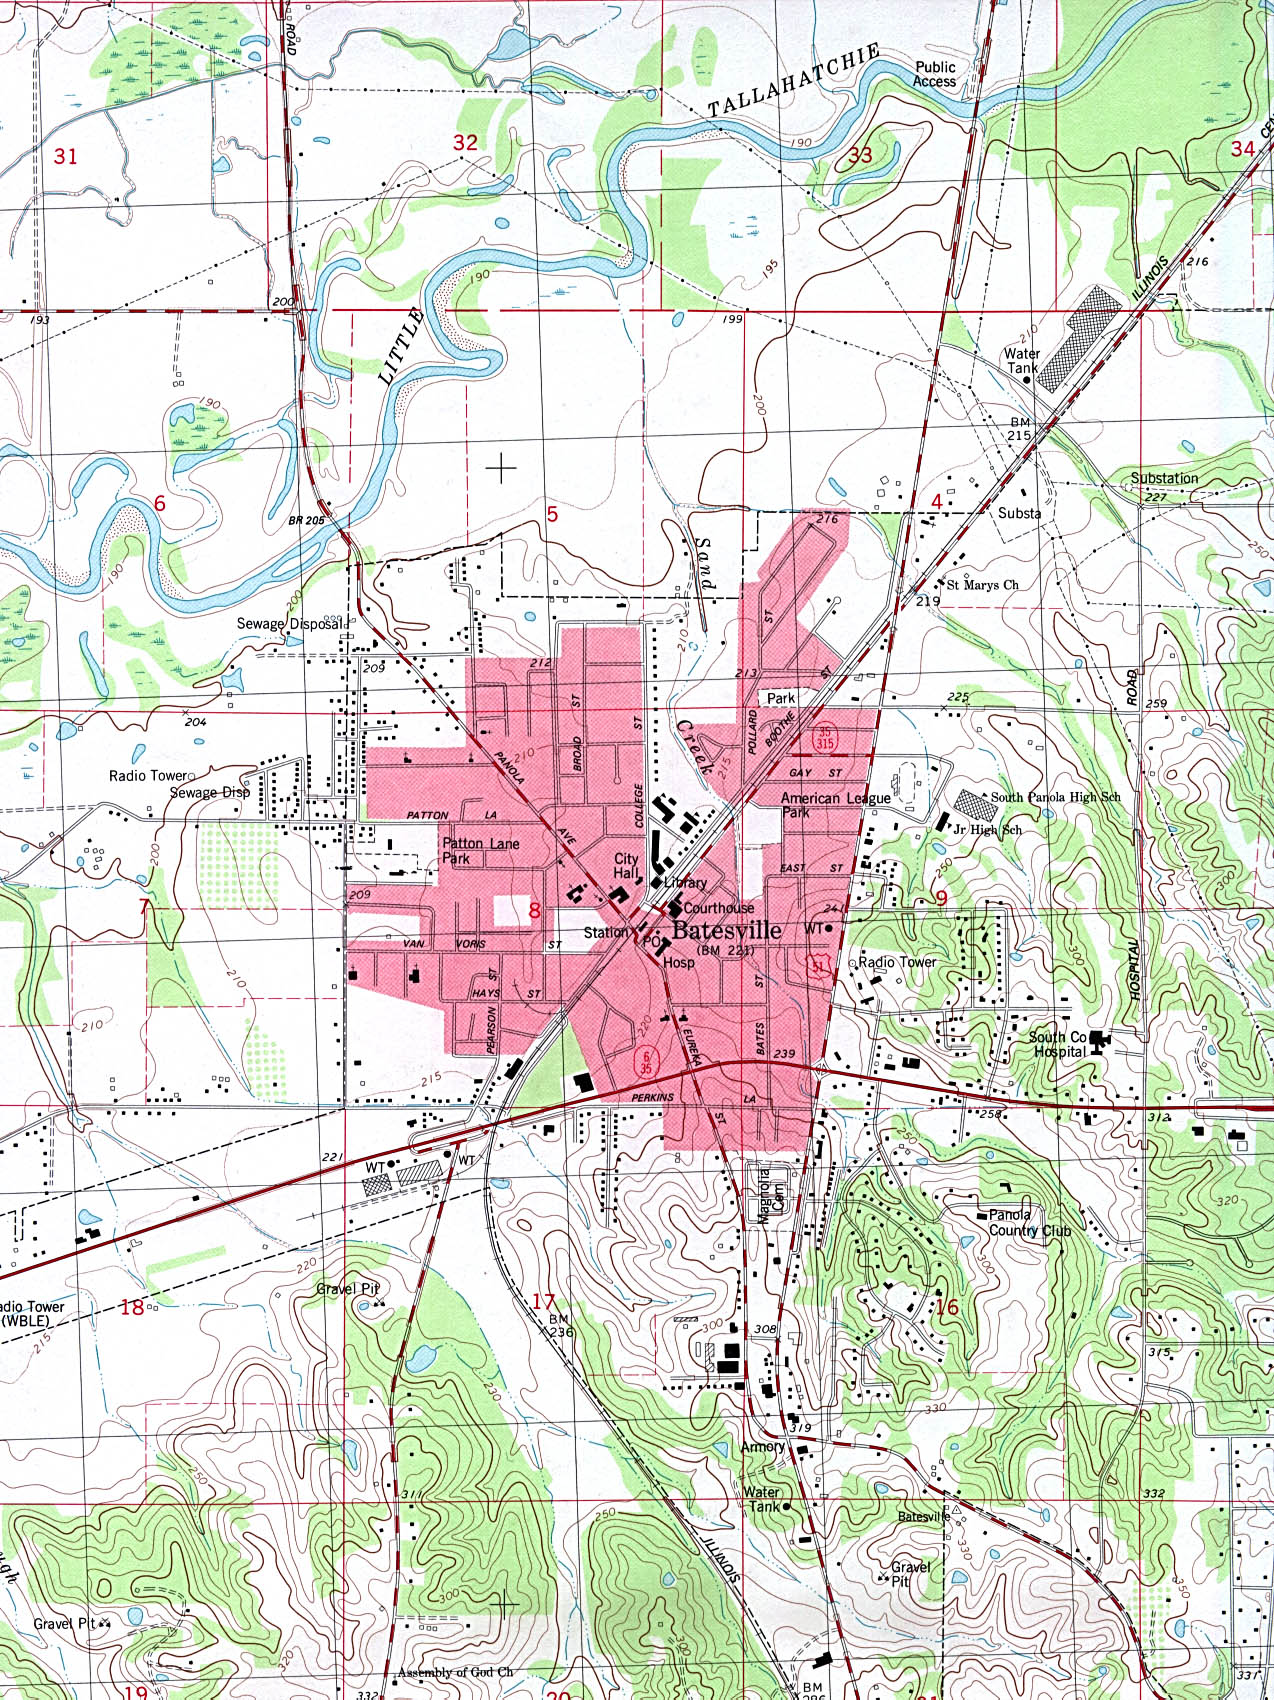 Mapa Topográfico de la Ciudad de Batesville, Misisipi, Estados Unidos